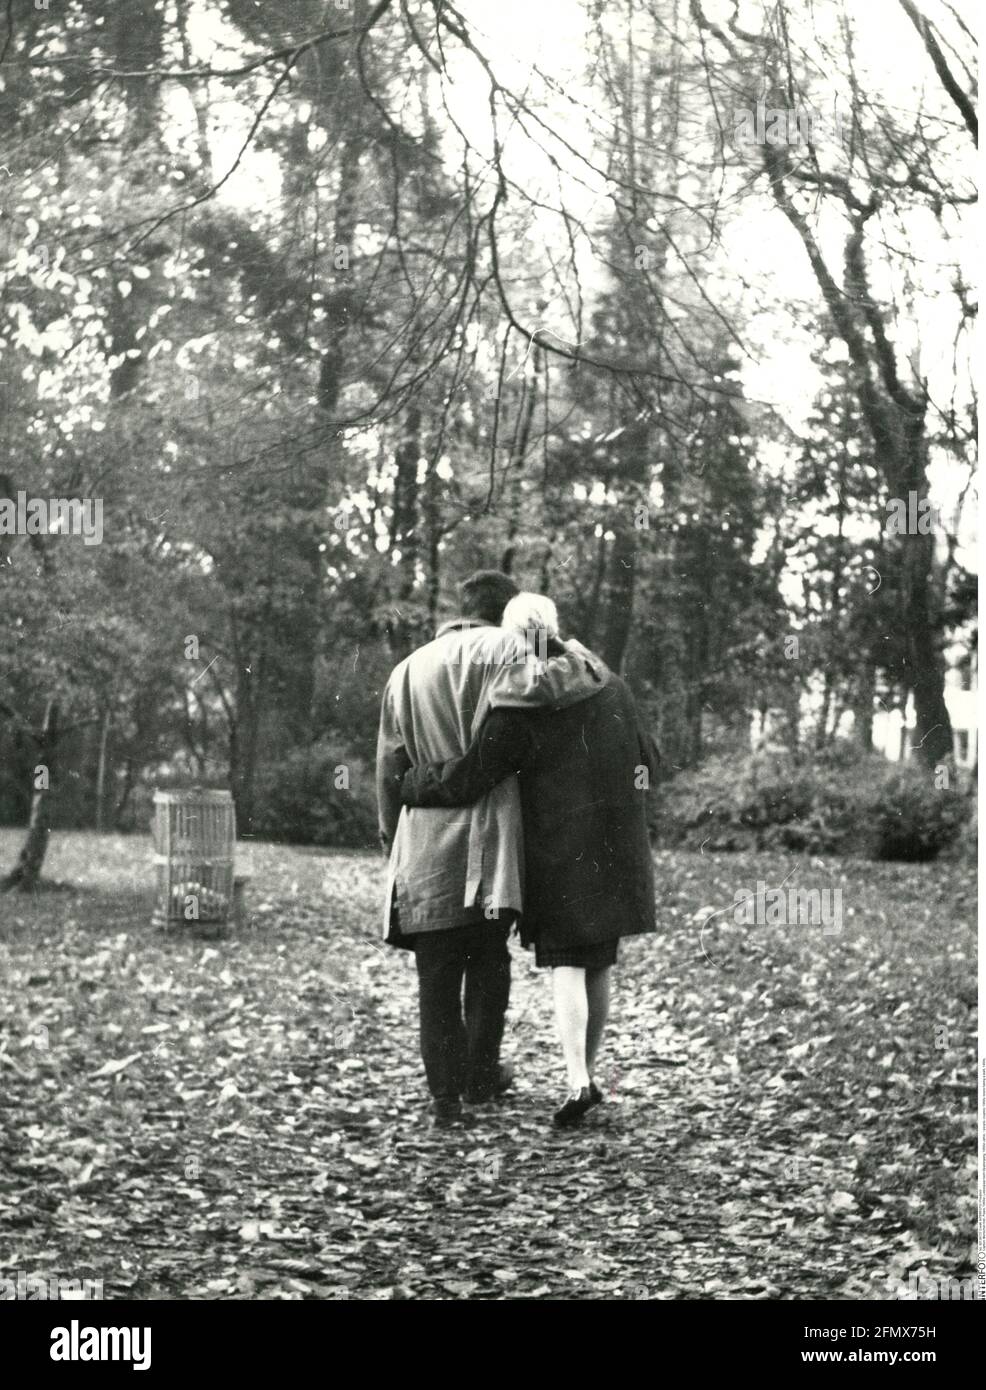 Menschen, Paare, 60er Jahre, Liebhaber, die einen Spaziergang machen, 60er Jahre, ZUSÄTZLICHE-RECHTE-CLEARANCE-INFO-NOT-AVAILABLE Stockfoto